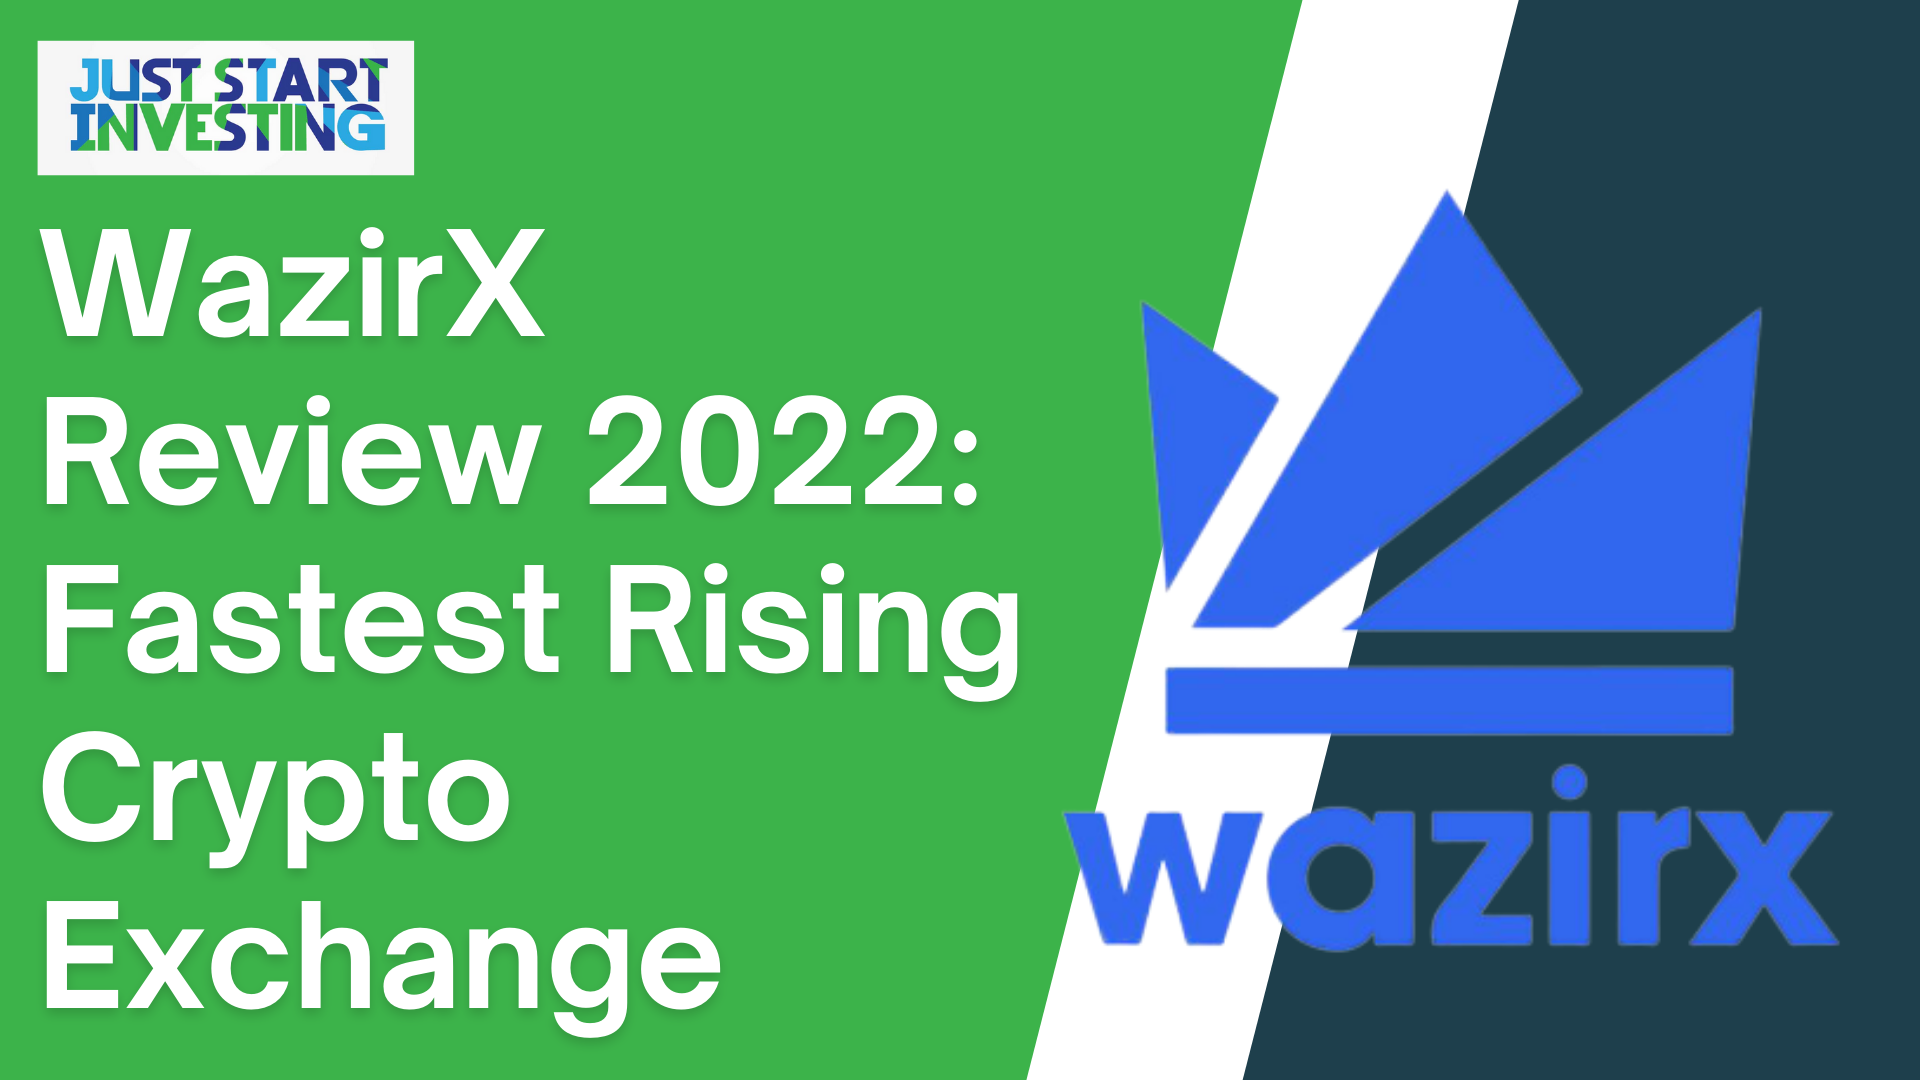 WazirX Review 2022